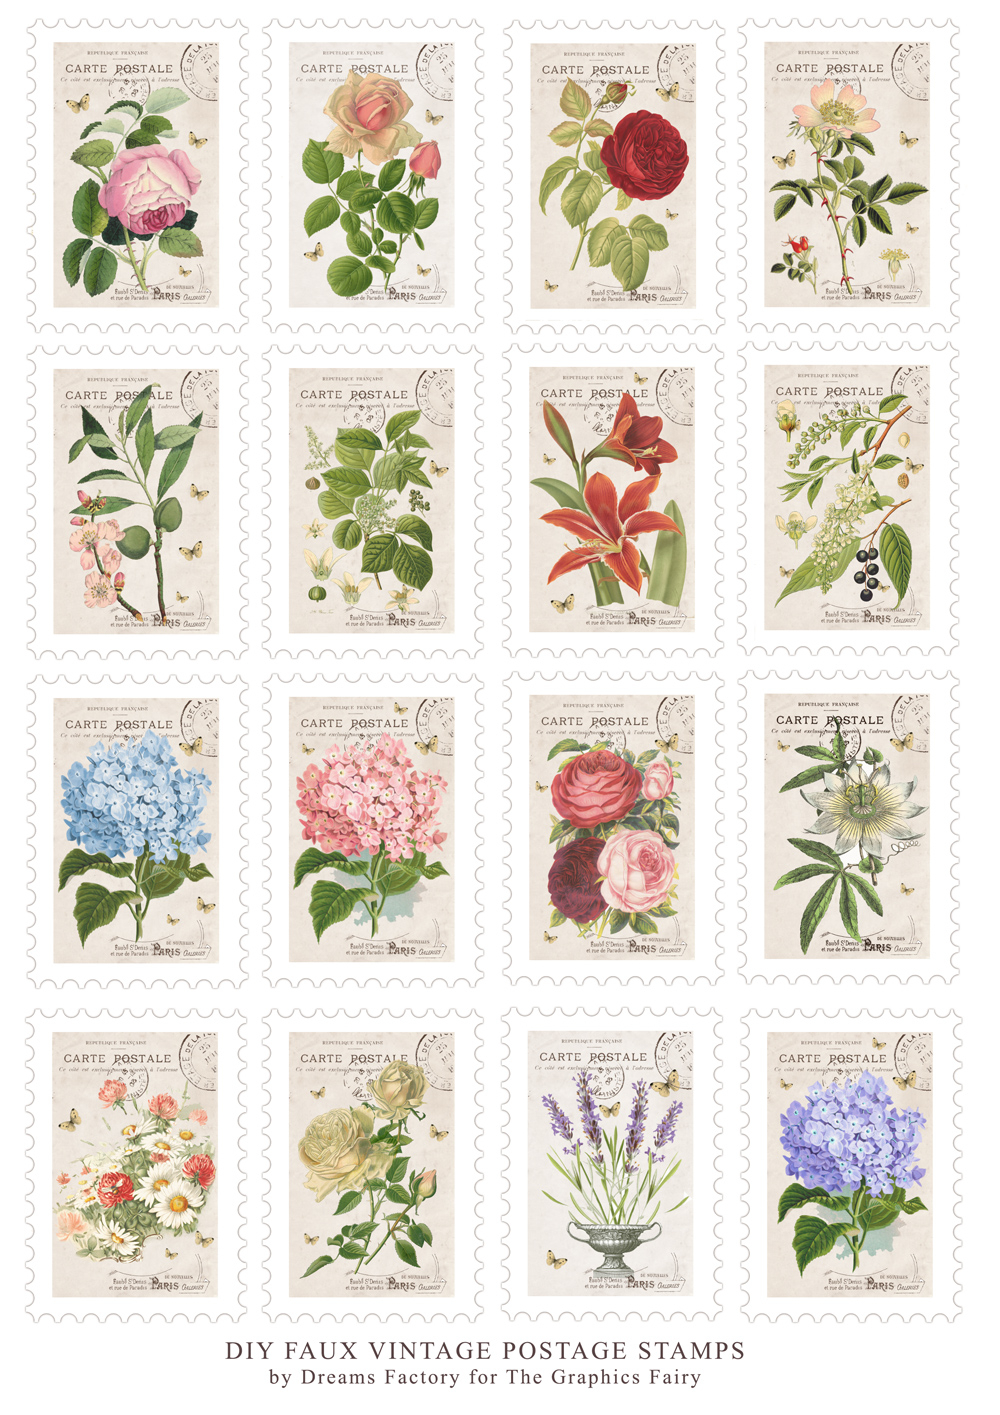 DIY Faux Vintage Postage Stamps Free Printable Free Printable 